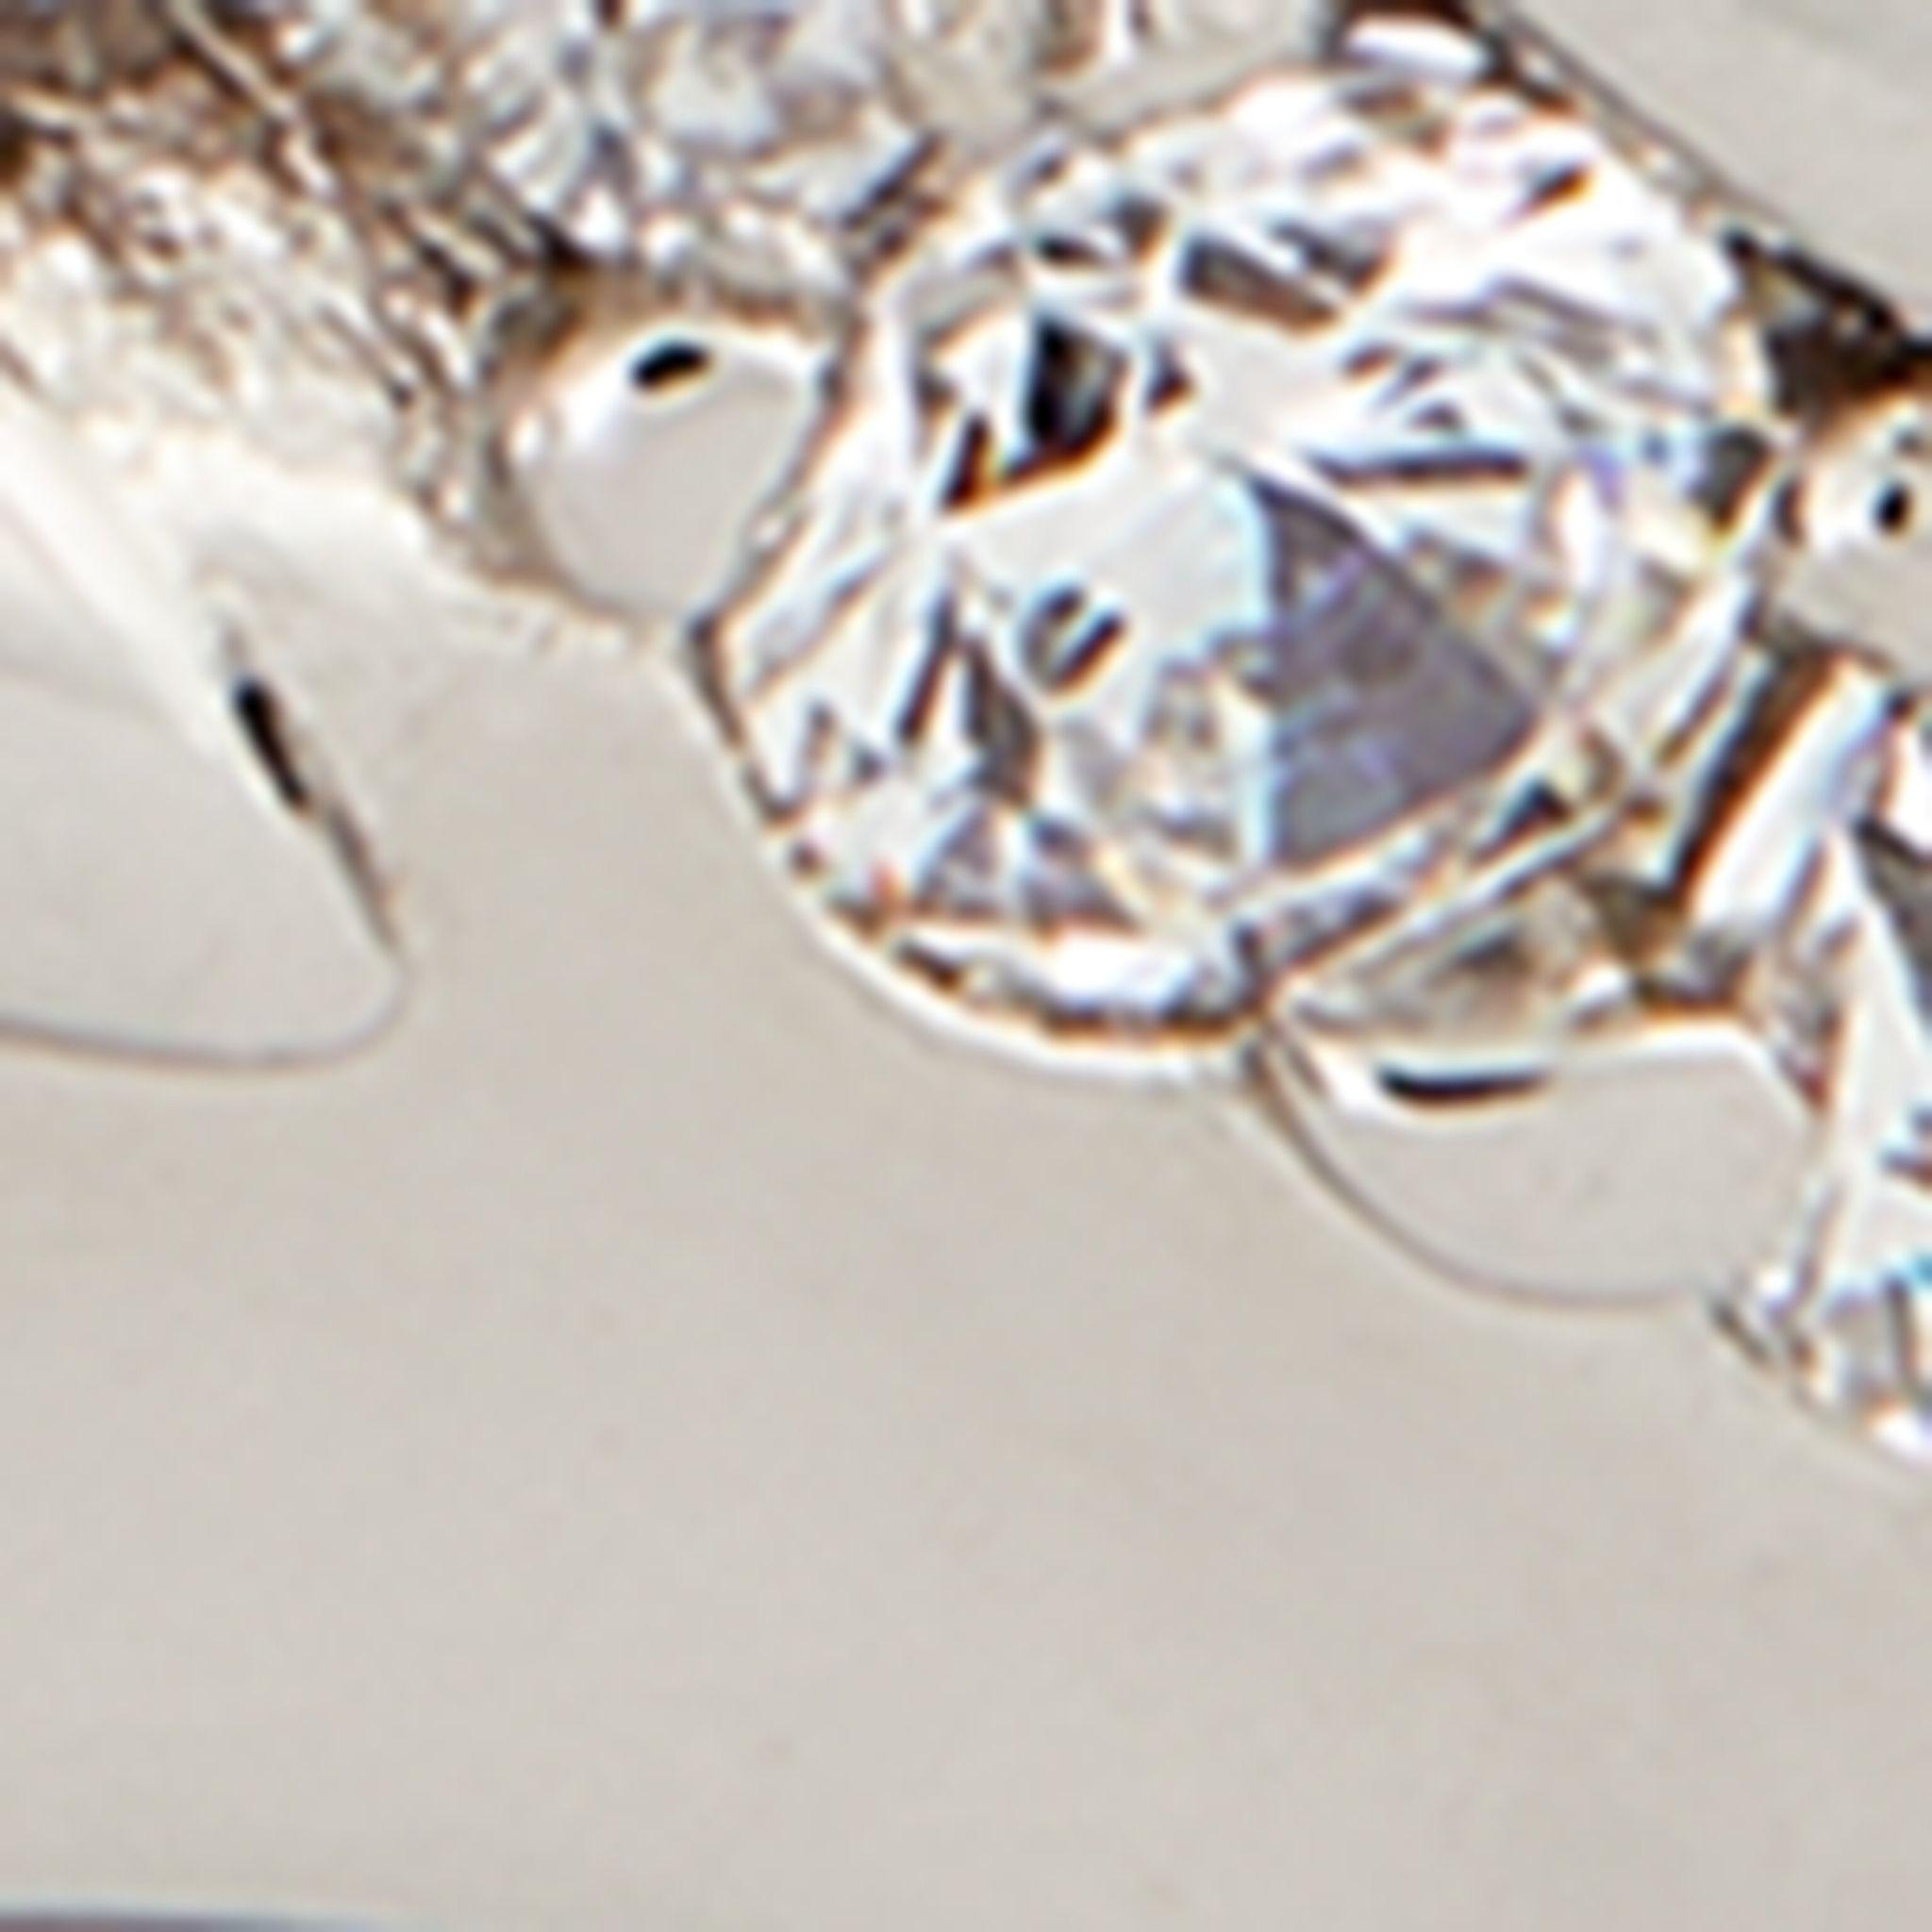 Vivienne Westwood Silver Crystal-embellished Skull Ring in